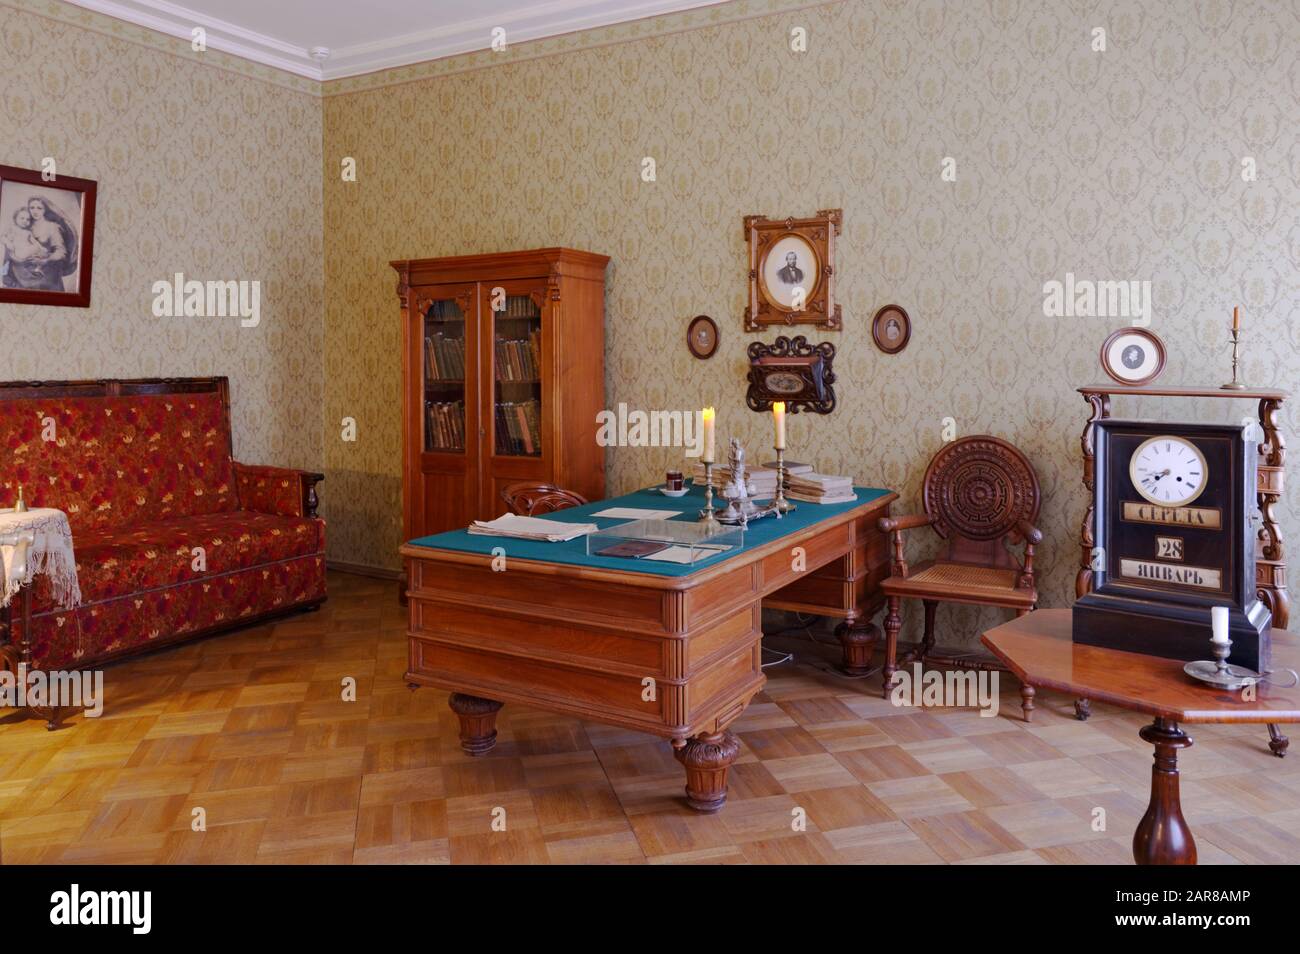 Sankt Petersburg, Russland - 19. Juni 2019: Inneneinrichtung des Büros in der Gedenkwohnung des berühmten russischen Autors Fjodor Dostojewski. In dieser Wohnung lebte er von 1878 bis zu seinen Toten im Jahr 1881 in diesem Amt Stockfoto